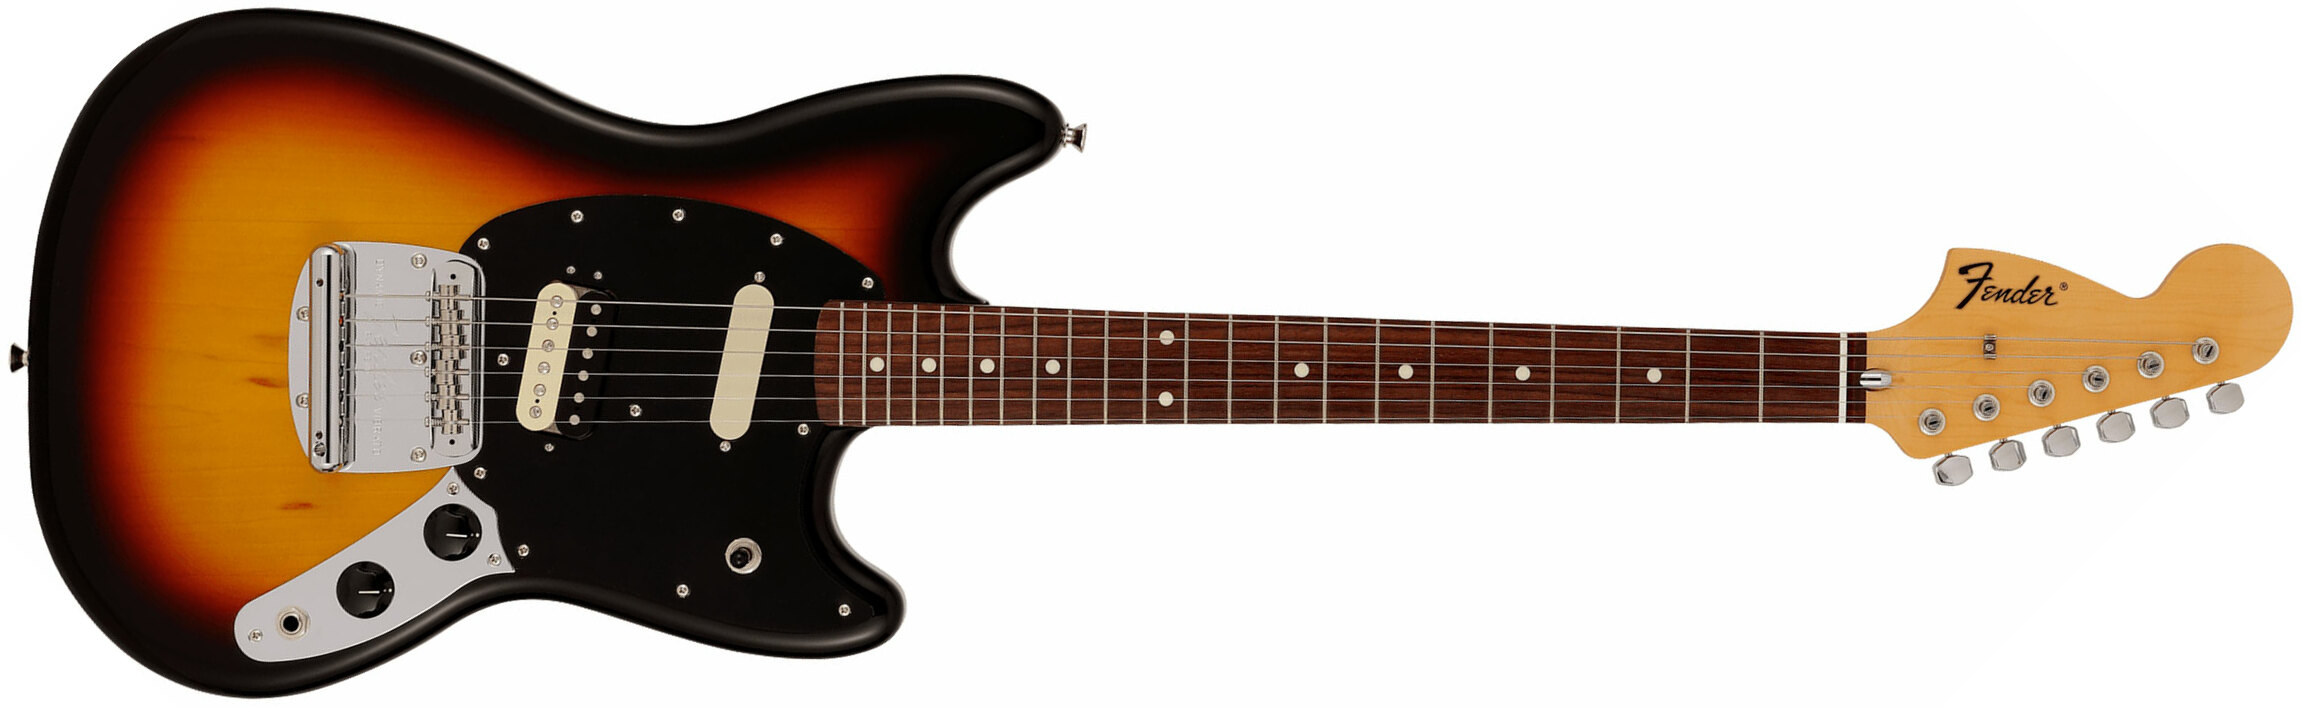 Fender Mustang Reverse Headstock Traditional Ltd Jap Hs Trem Rw - 3-color Sunburst - Guitarra eléctrica con forma de str. - Main picture